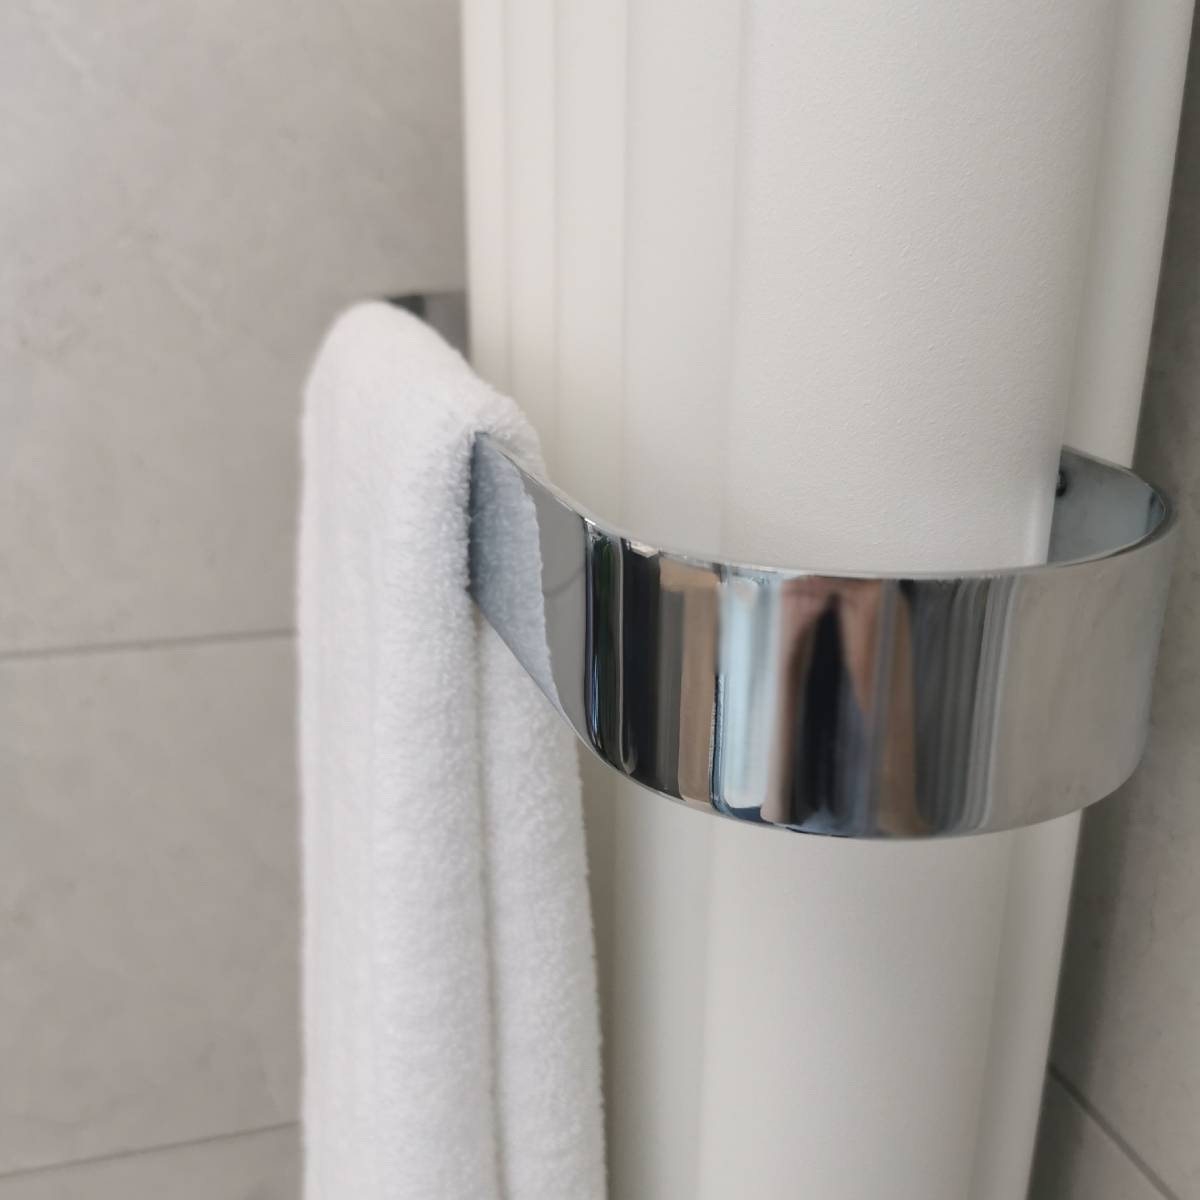 Burford 345mm Towel Hanger - Chrome (13644)